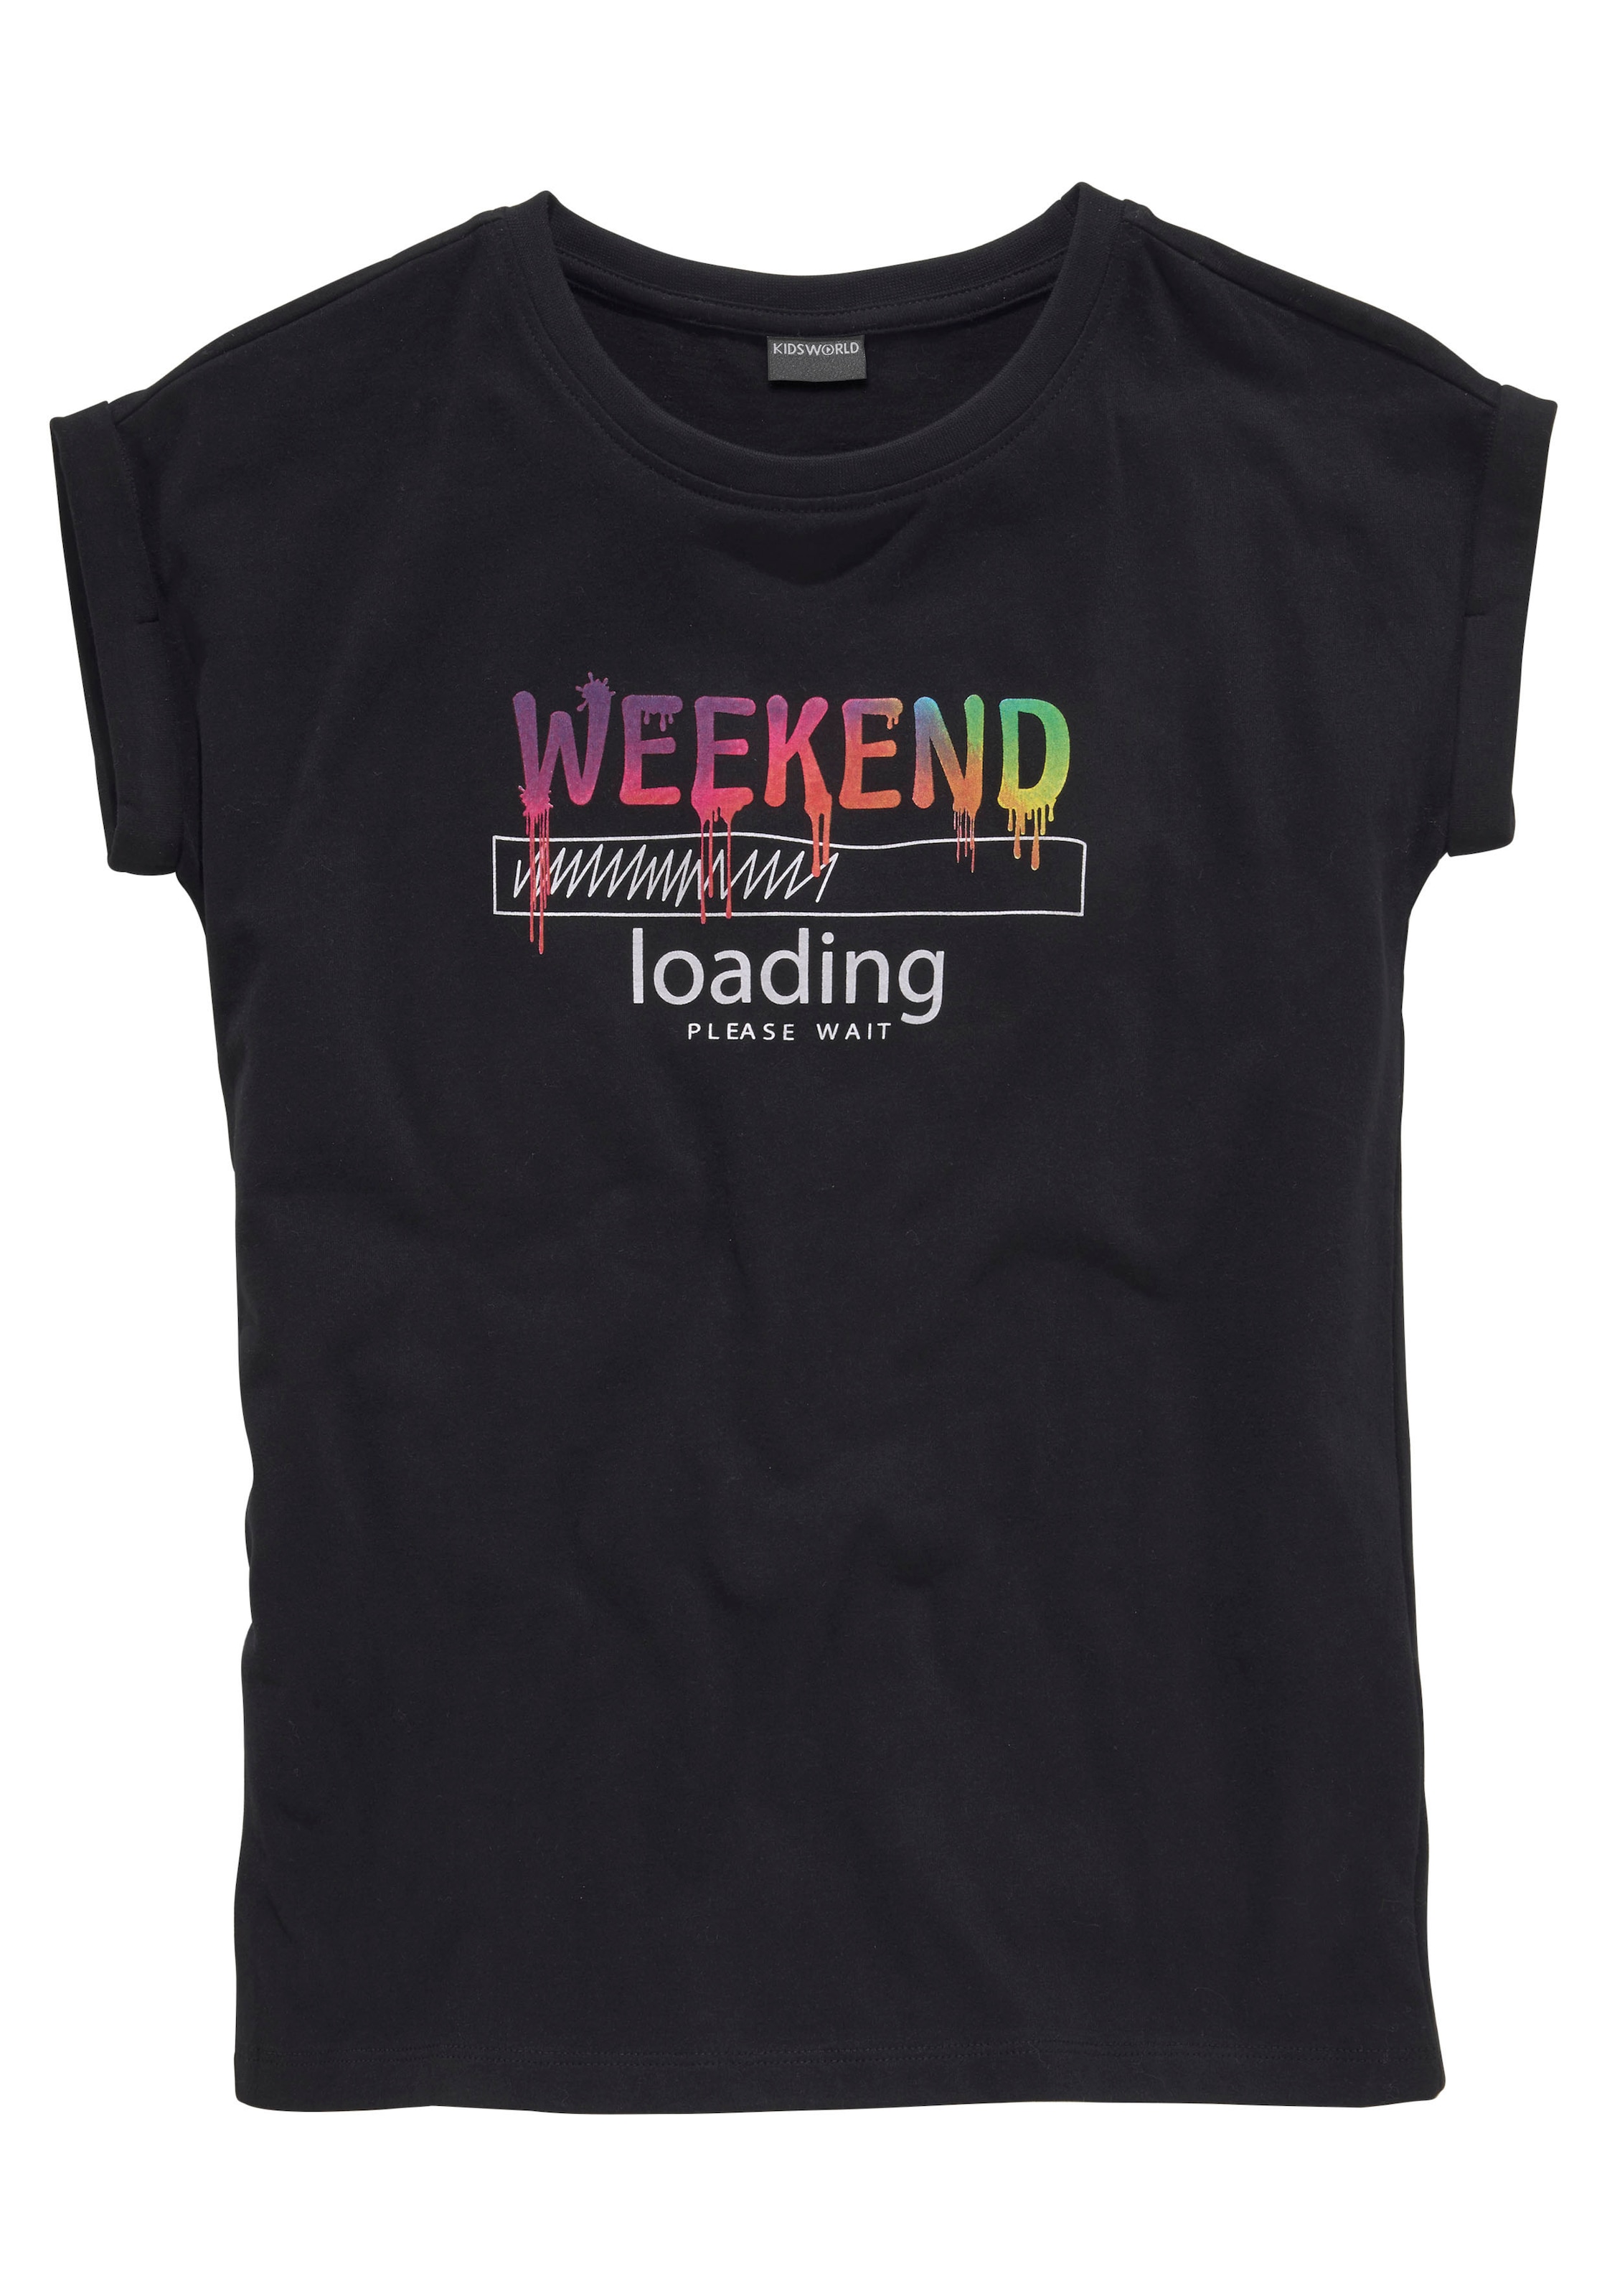 unterschiedlich T-Shirt »WEEKEND wait«, KIDSWORLD sind weiter legerer loading...please Jelmoli-Versand ✵ Regenbogen-Druckfarben kaufen in | online Form,